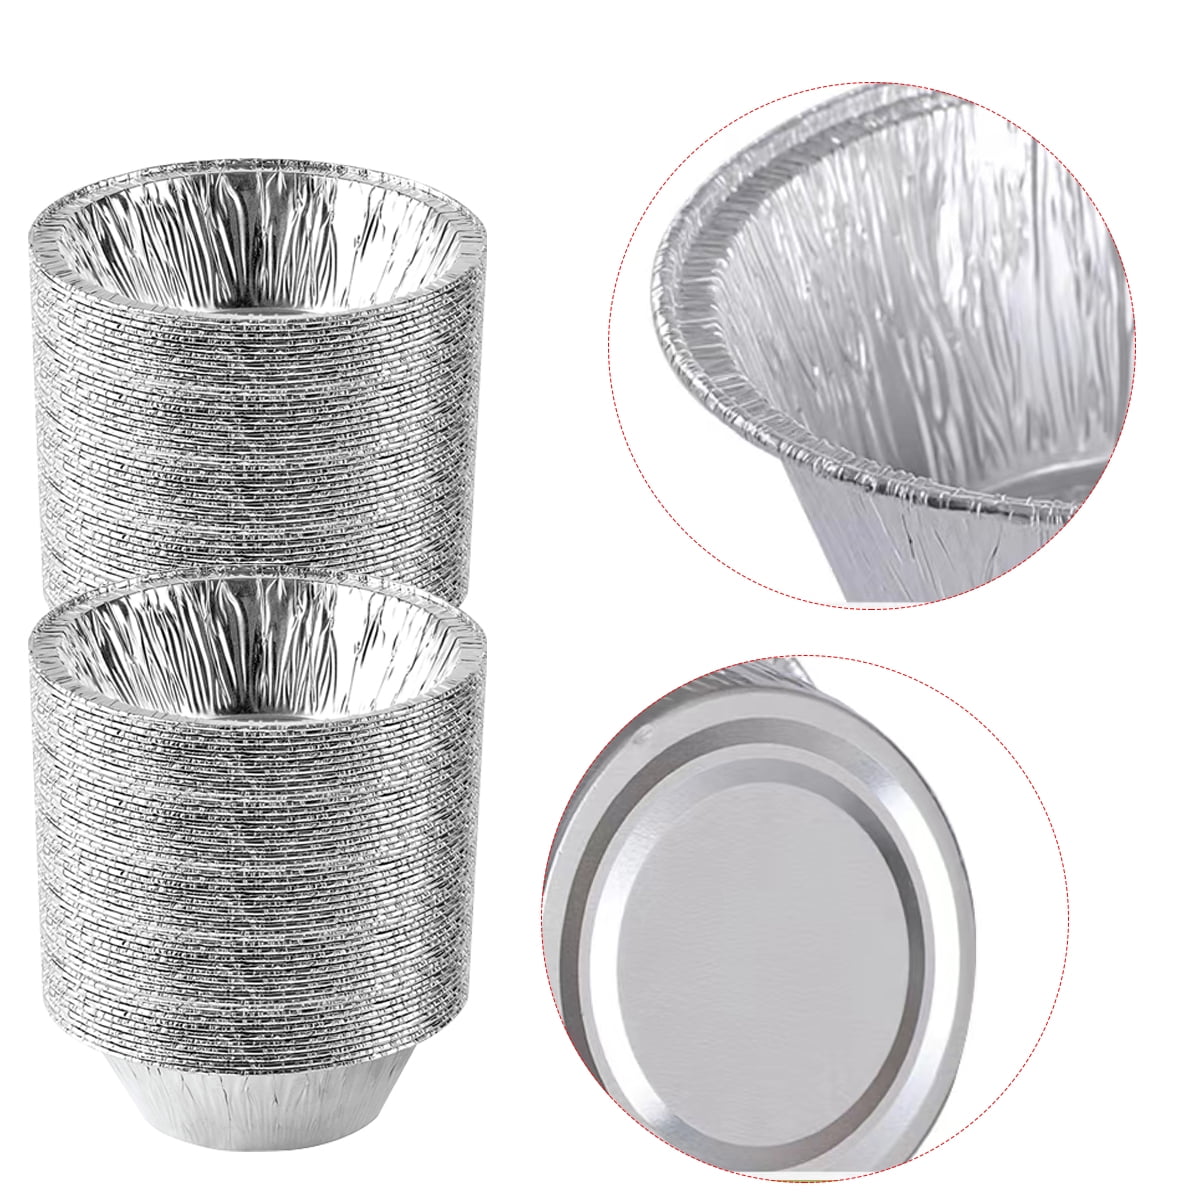 DOBI 5 Pie Pans [50-pack] - HEAVY-DUTY Disposable Aluminum Foil Pie tins,  Individual-Portion-Size Pie Plates